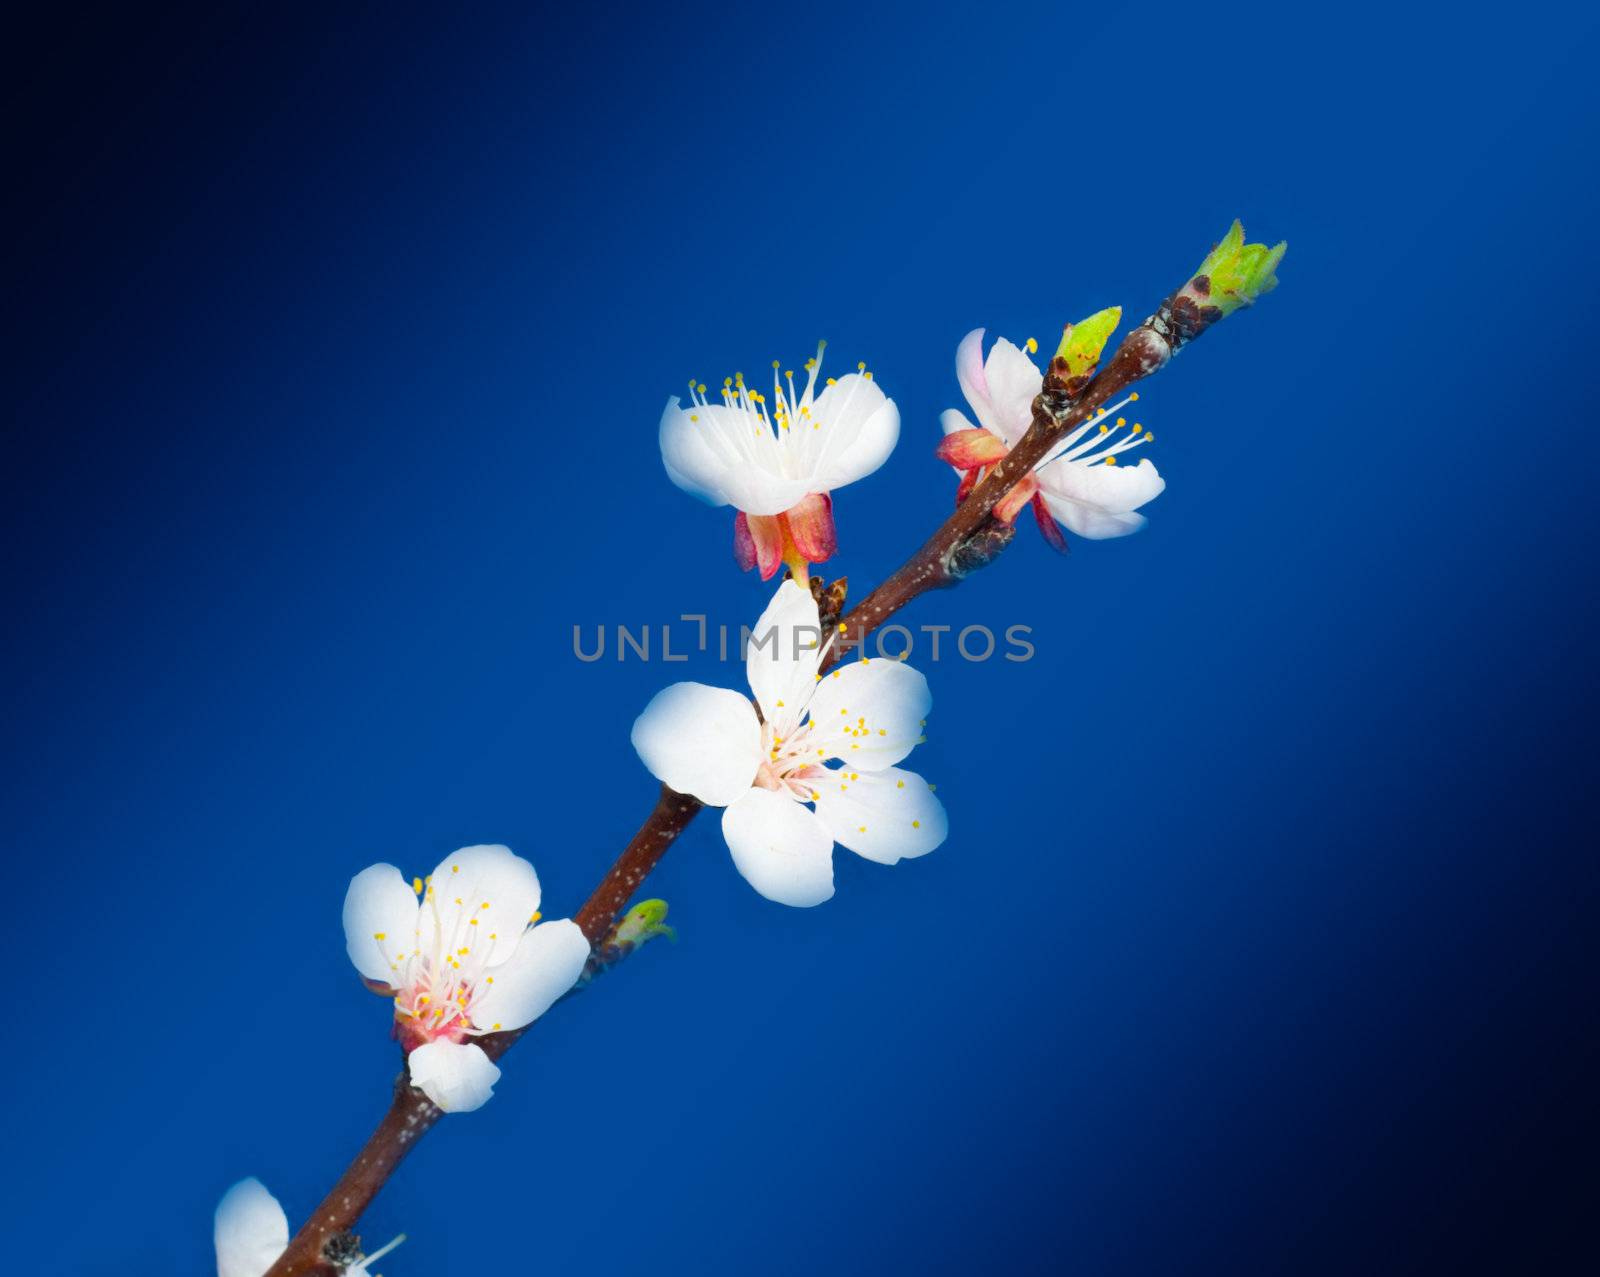 apple flowers on a blue background by schankz